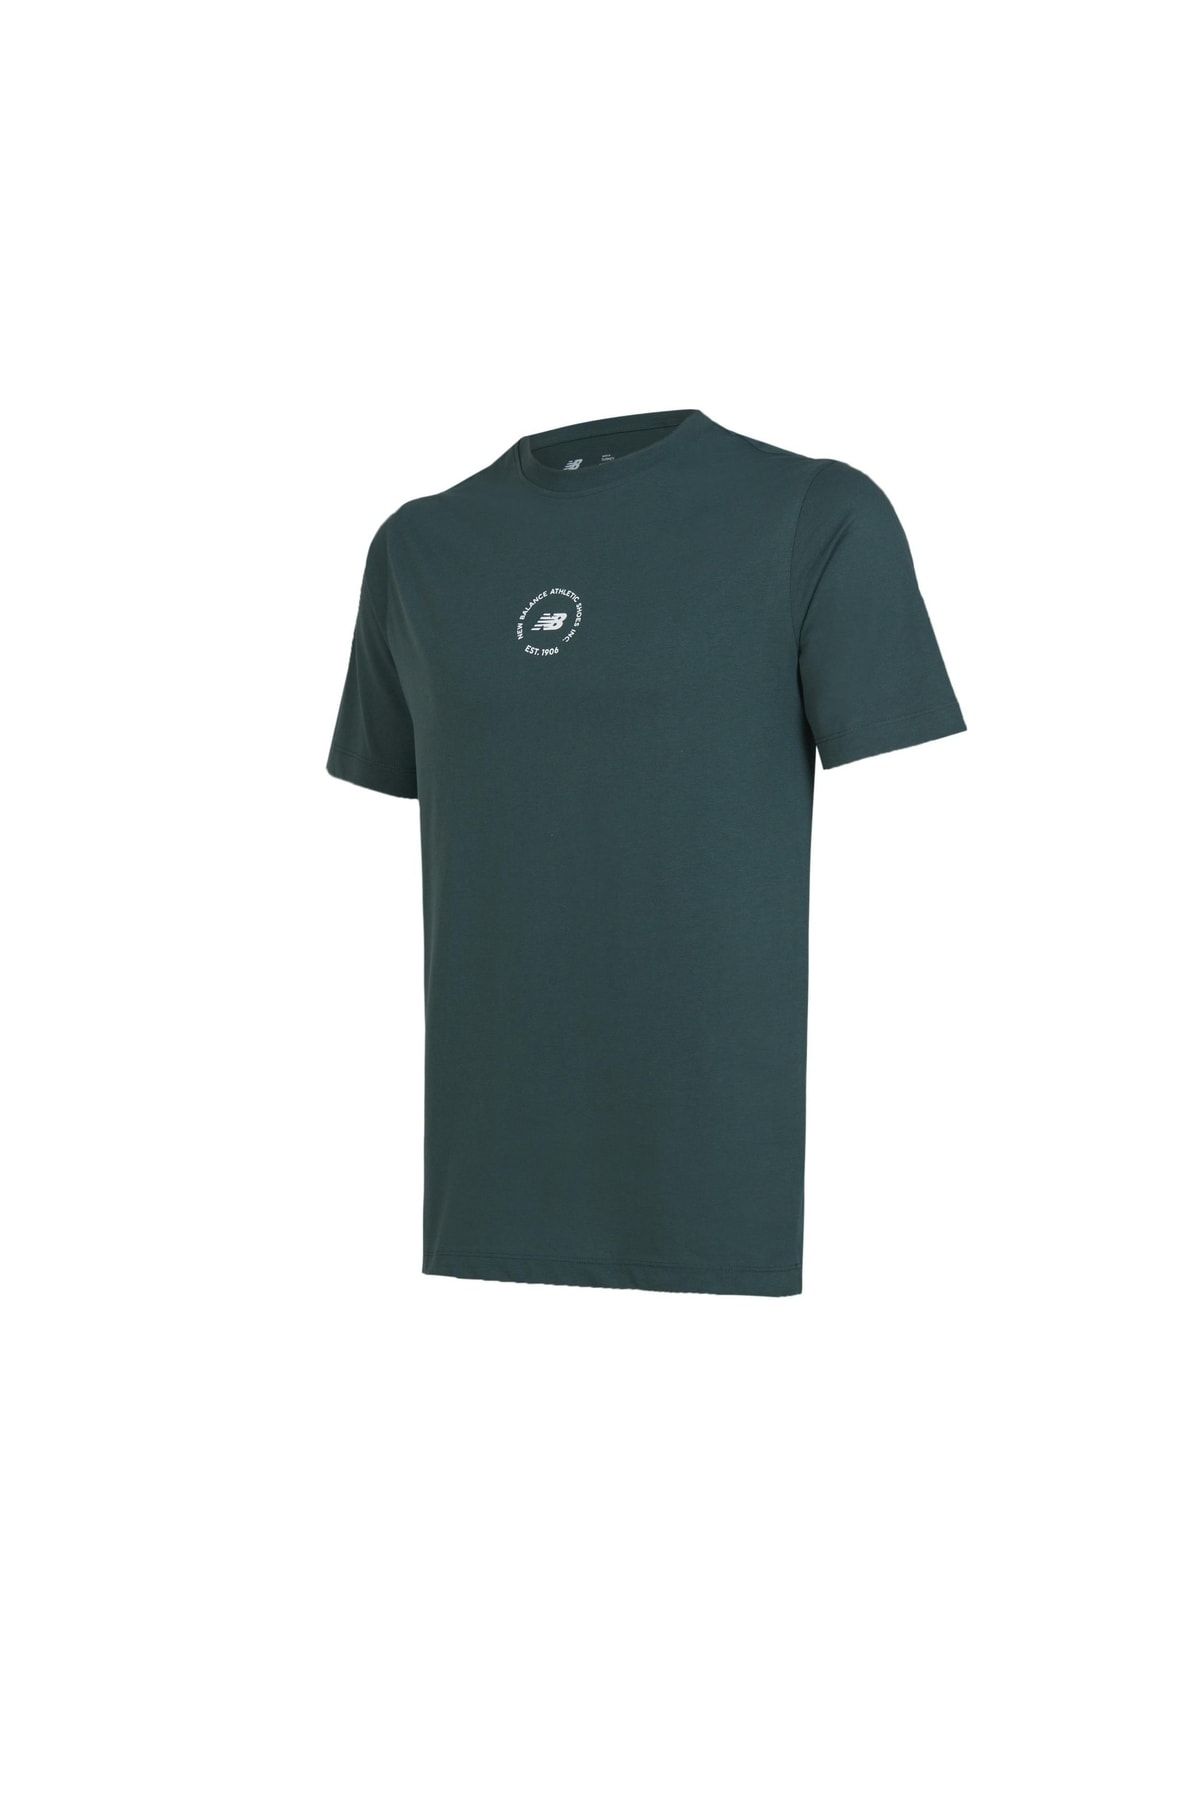 New Balance Erkek Yeşil T-shirt Unt1311-pne